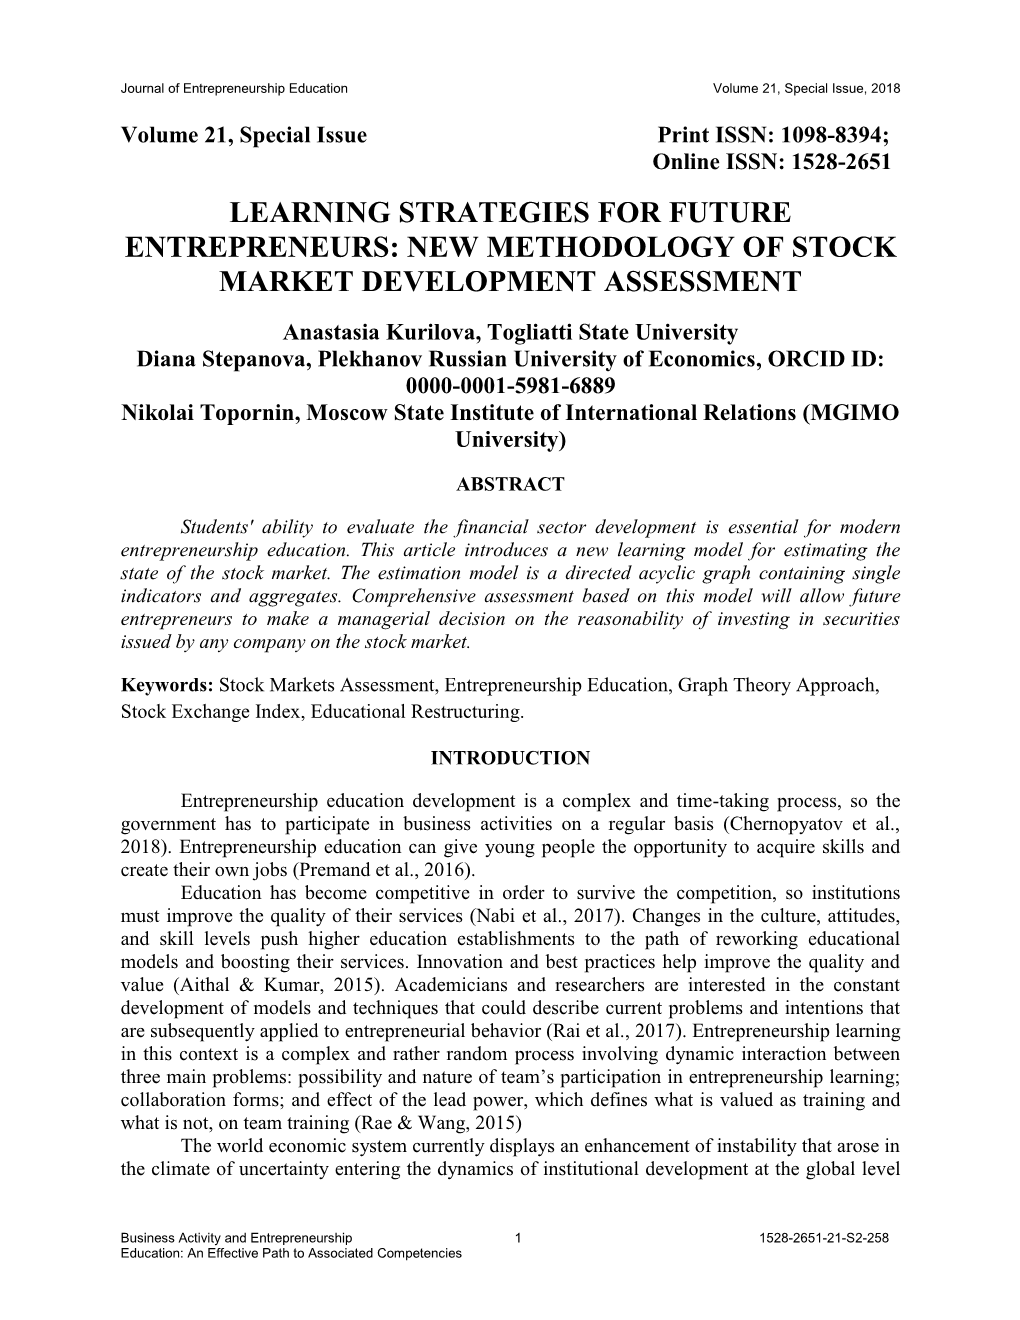 Learning Strategies for Future Entrepreneurs: New Methodology of Stock Market Development Assessment